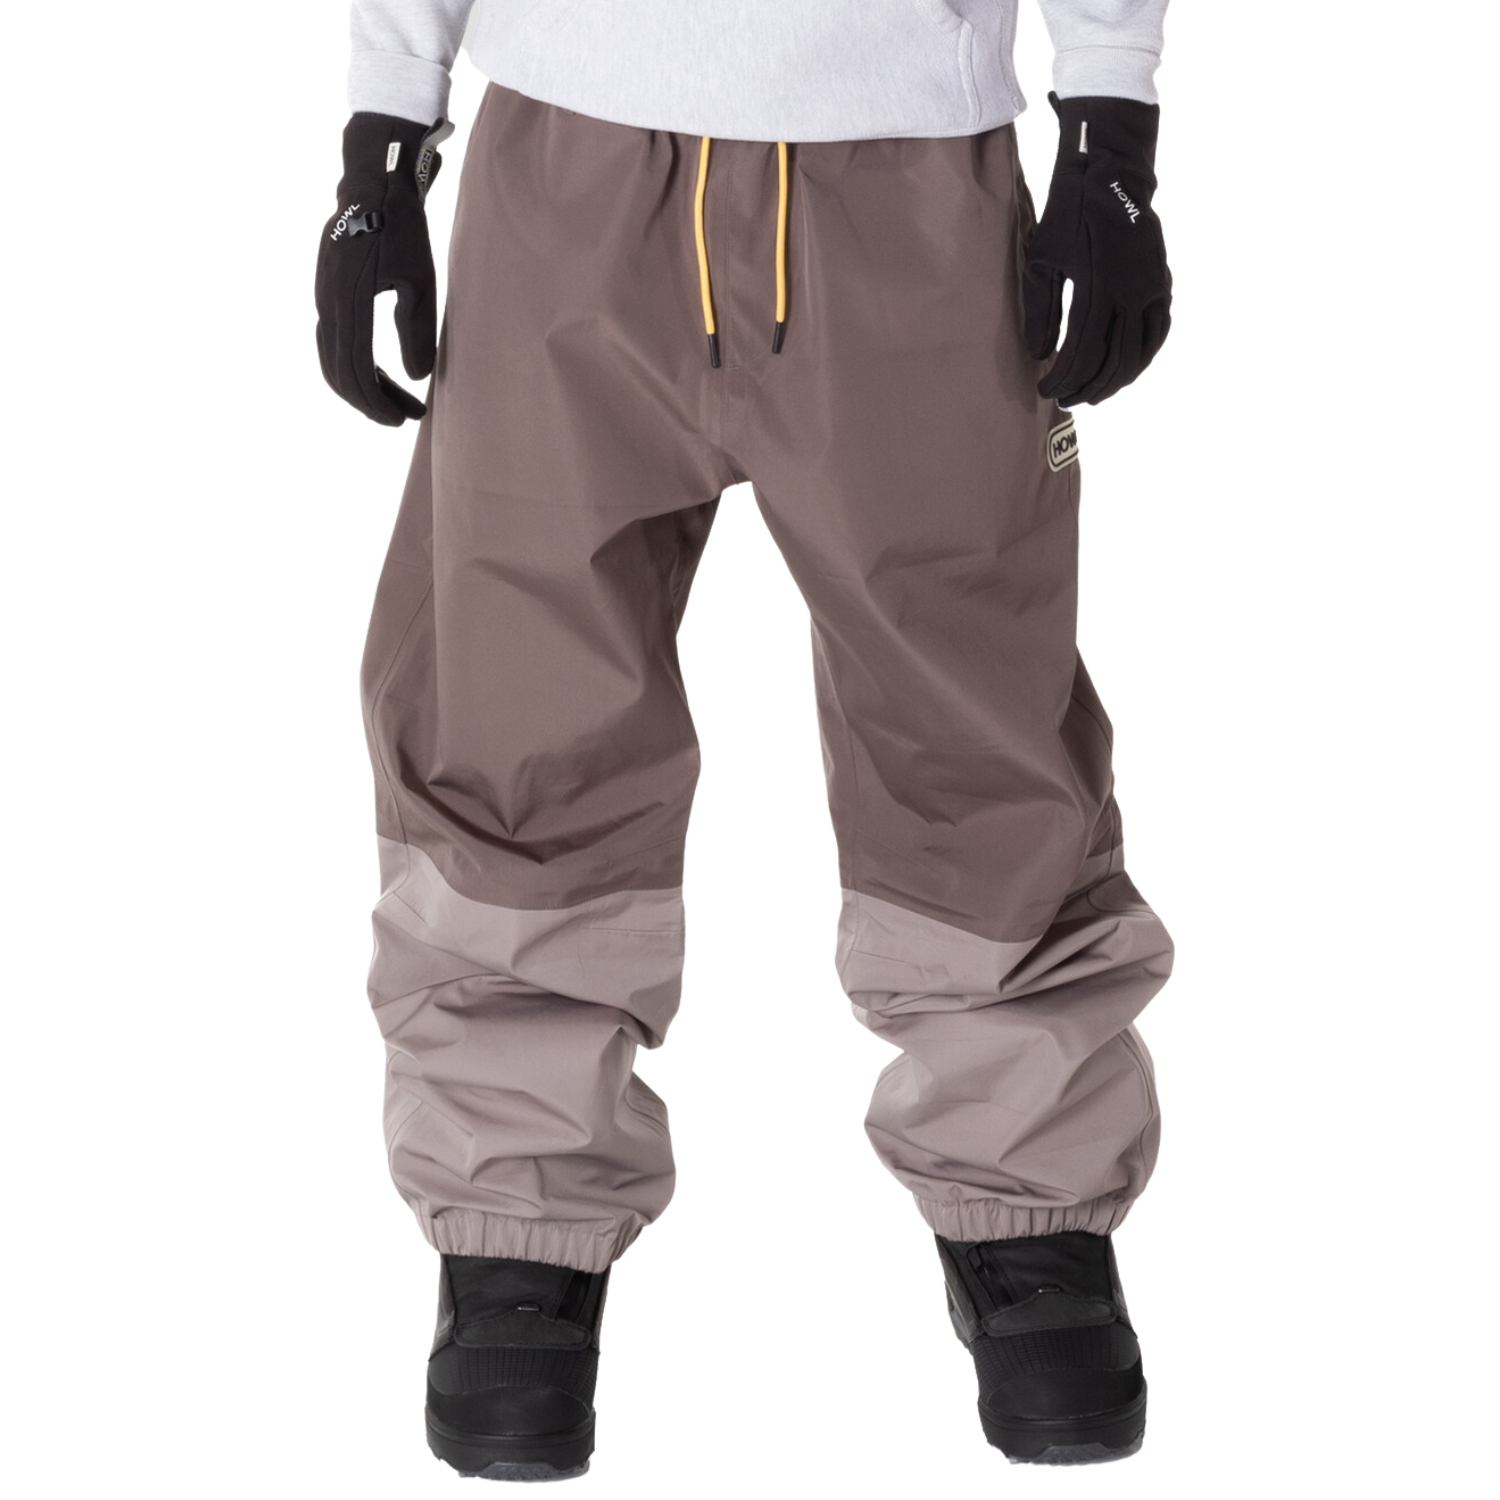 Men's Snow Pants Sale - Essential Winter Gear